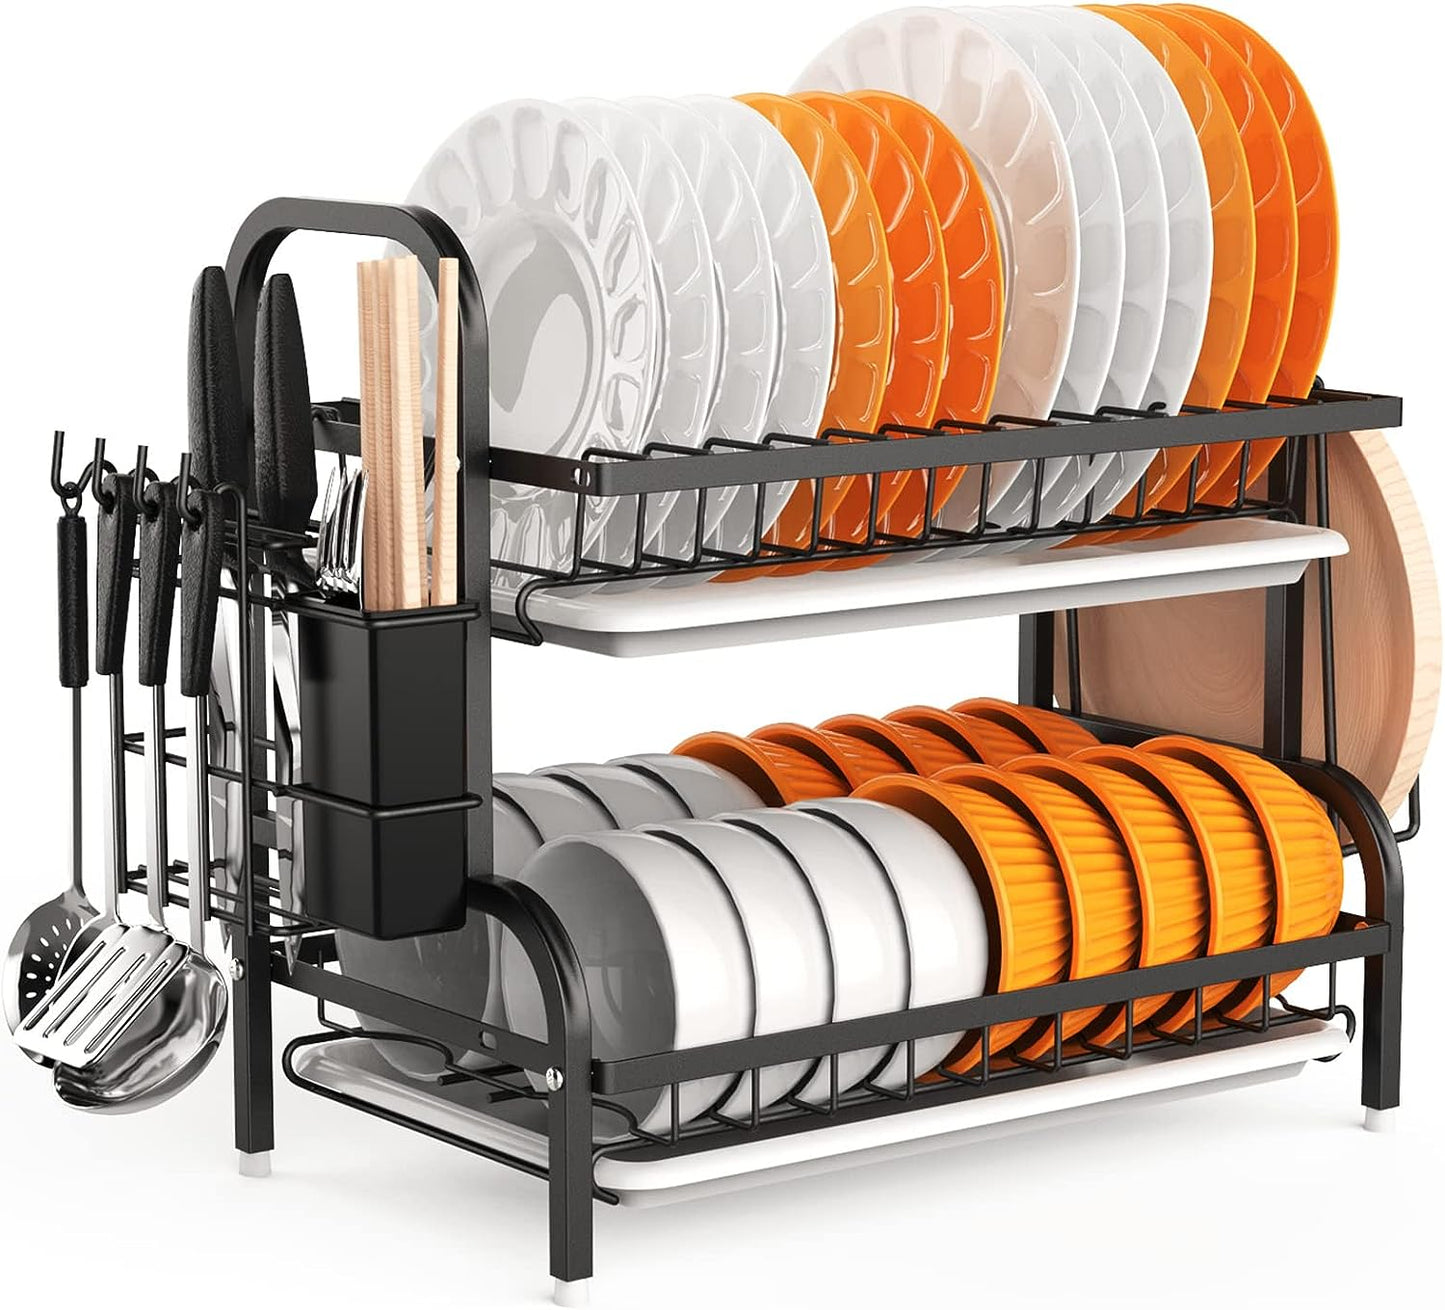 Rack de secagem de pratos, racks de pratos de 2 camadas para balcão de cozinha, escorredor de pratos de pia com escorredor, suporte para utensílios e suporte para tábua de corte, rack de secagem de cozinha em aço inoxidável-preto